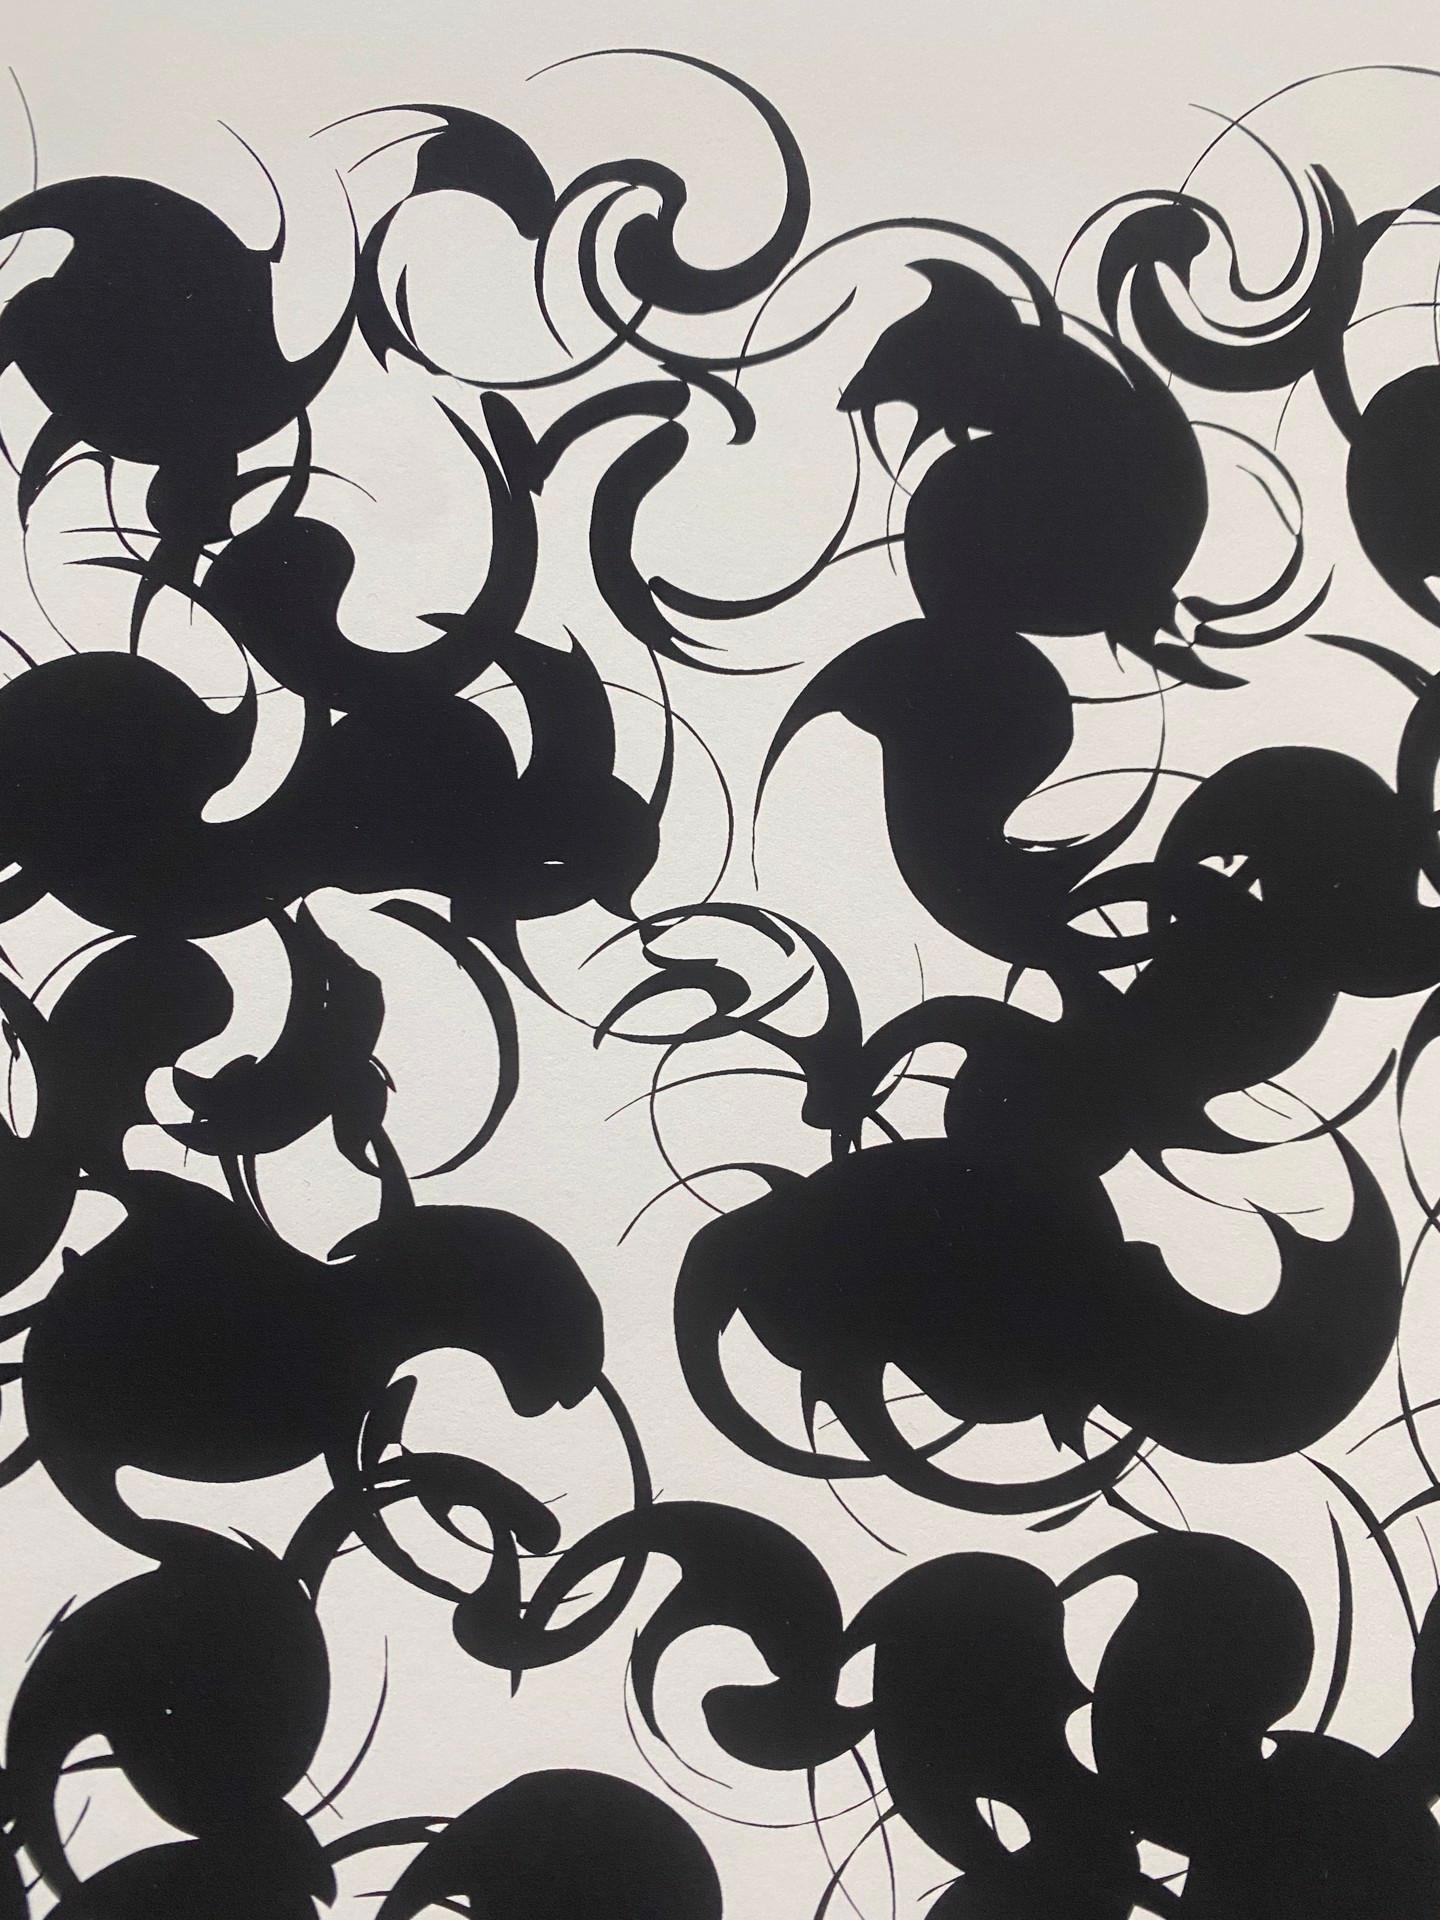 12-7-11-4 - Black Abstract Print by Peter Feldstein